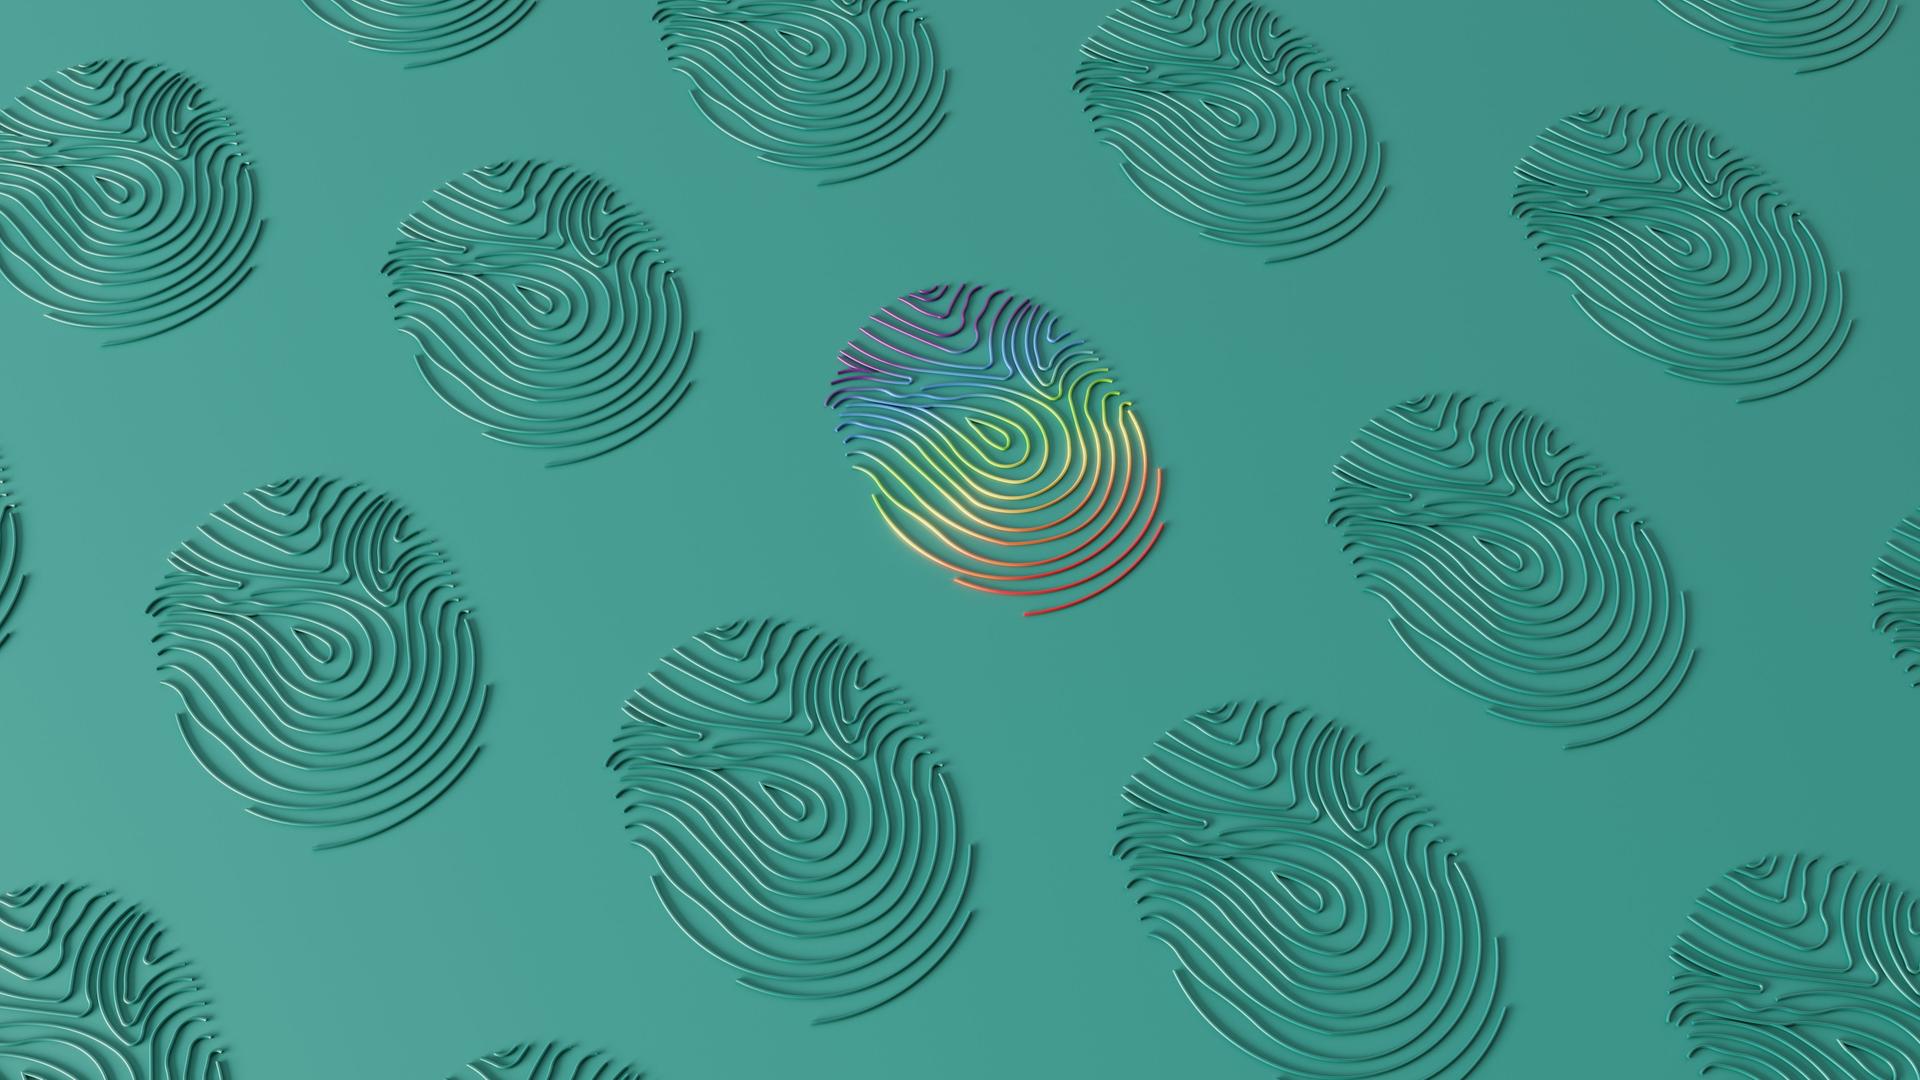 3D-Rendering mehrerer Fingerabdrücke auf einer türkisfarbenen Oberfläche. Der mittlere Abdruck changiert in den Regenbogenfarben.